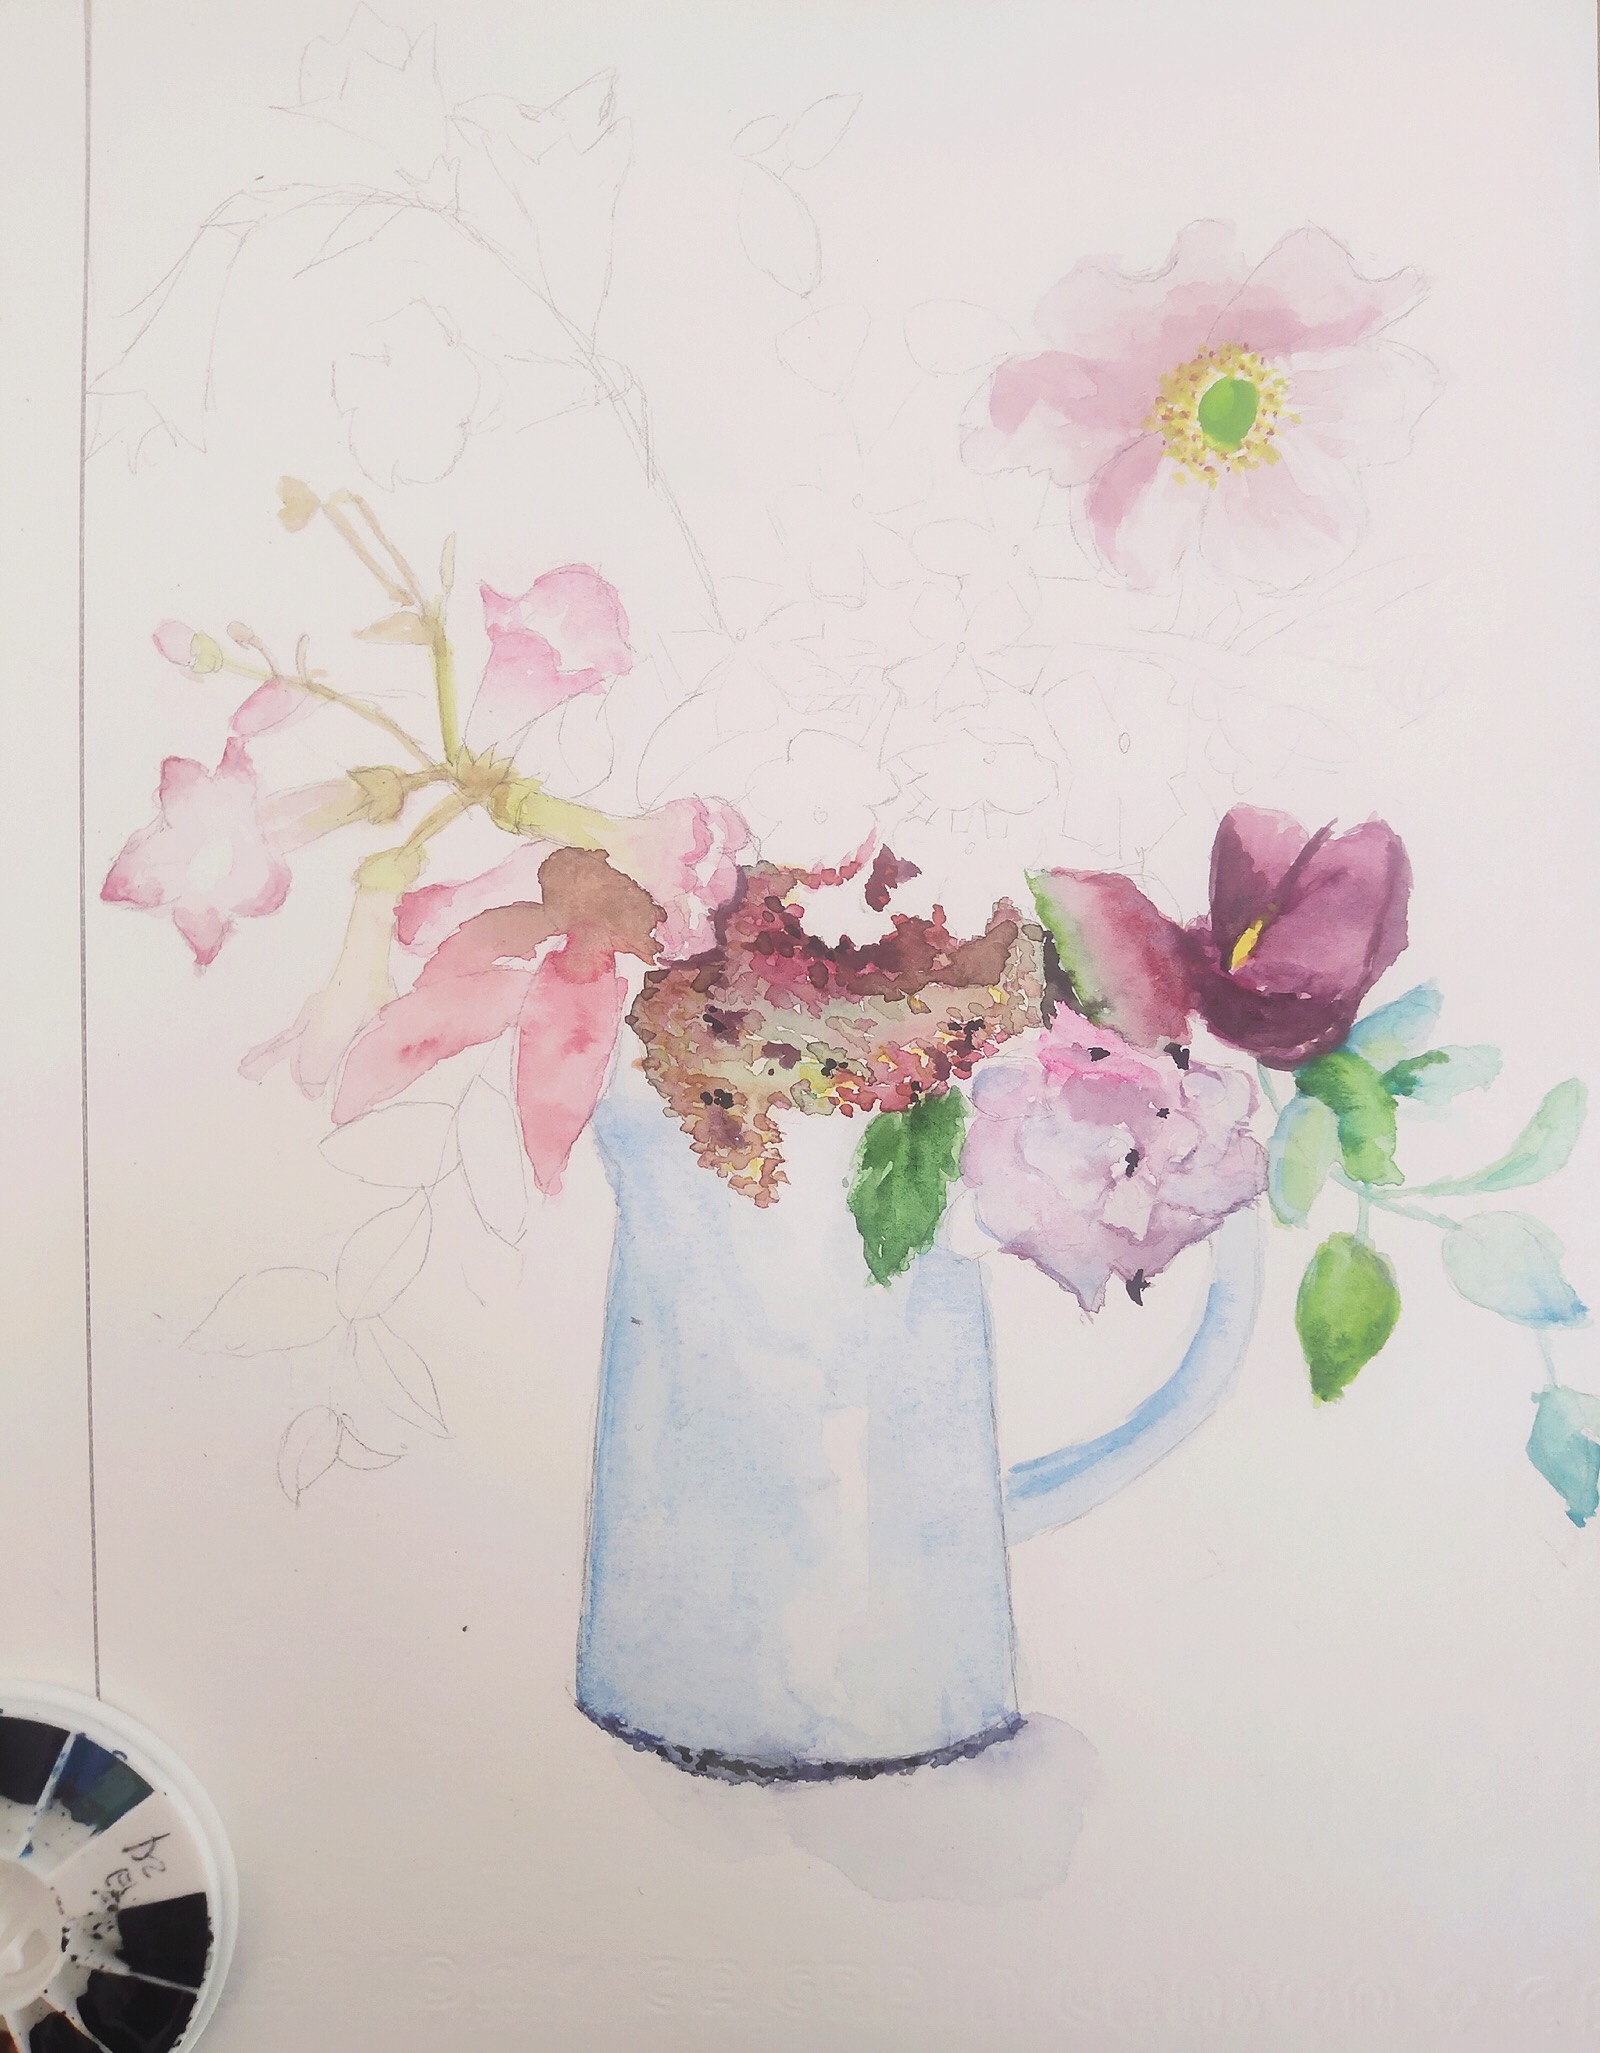 教你画水彩花束今天我们来画一束花瓶插花 堆糖 美图壁纸兴趣社区